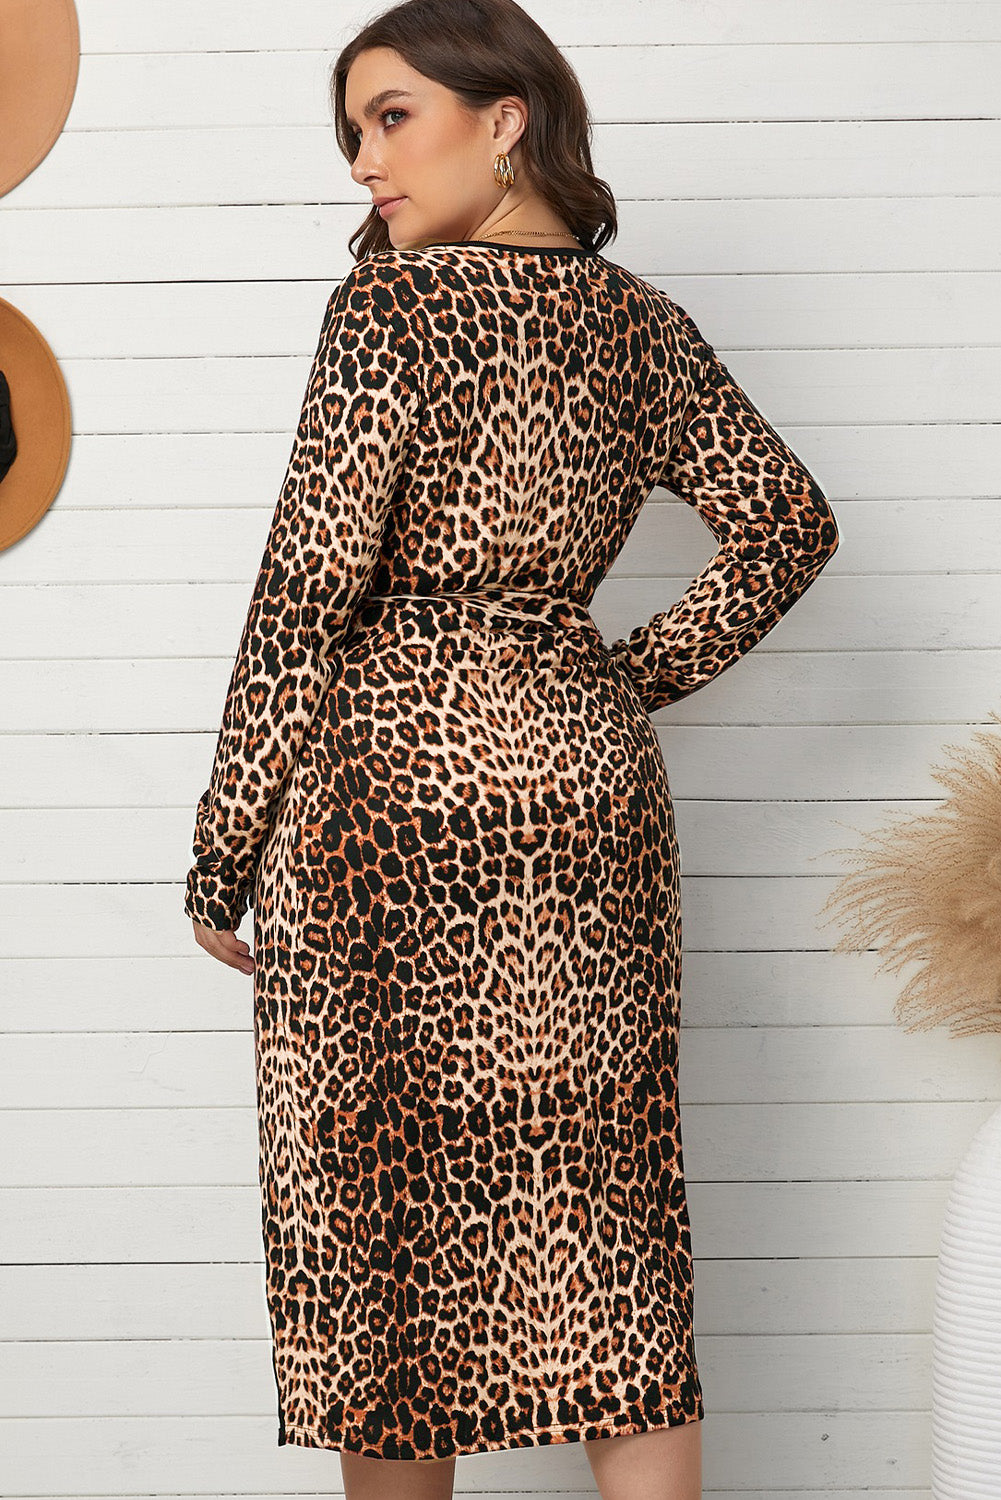 Leopard Belted Surplice Wrap Dress - Plus Size